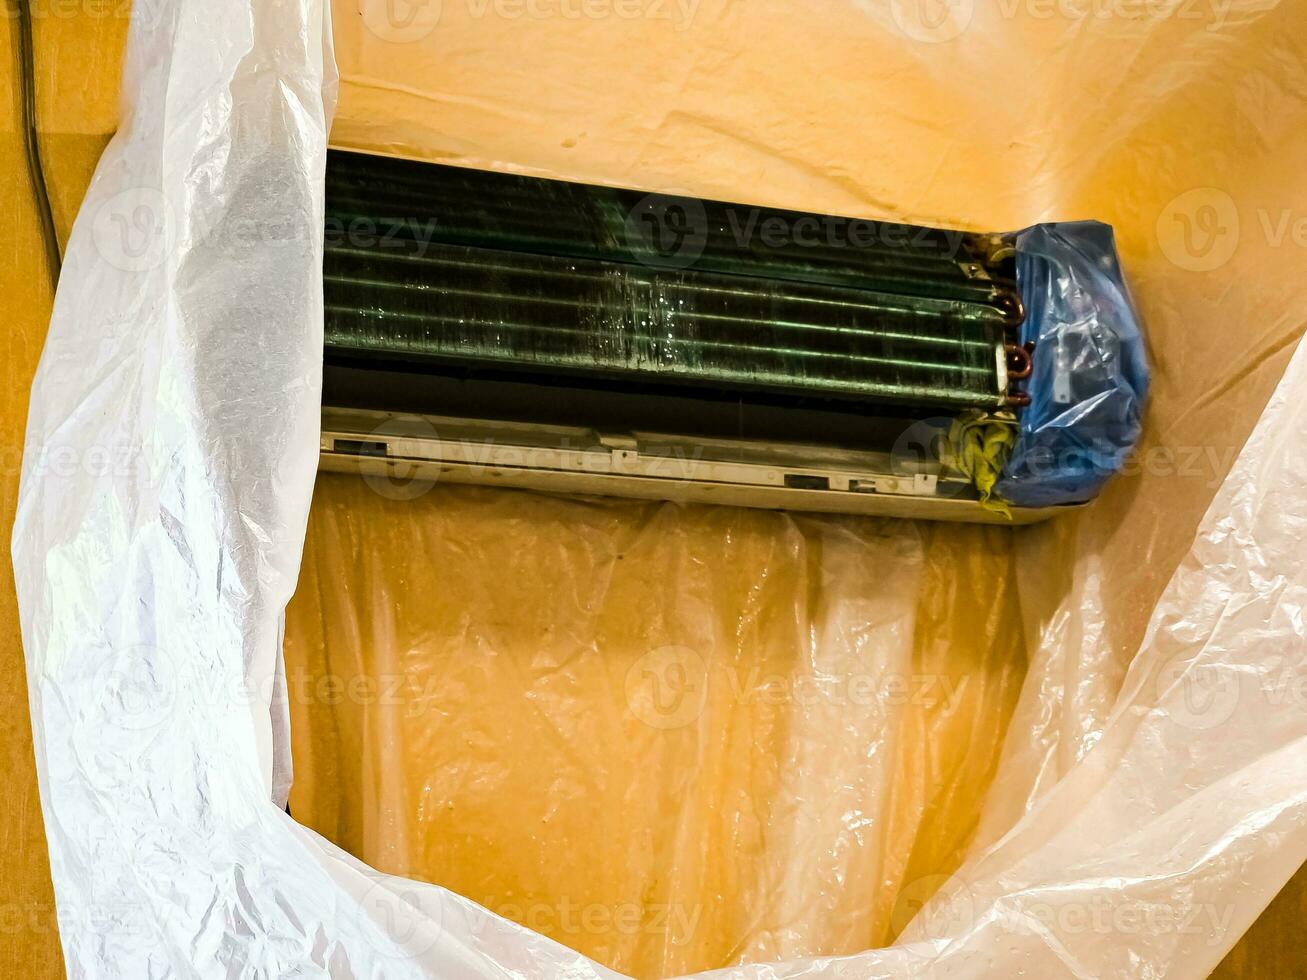 voorbereidingen treffen voor schoonmaak de binnen- eenheid van de lucht conditioner en omhulsel het in een polyethyleen mouw. schoonmaak met water Jet en Chemicaliën. foto